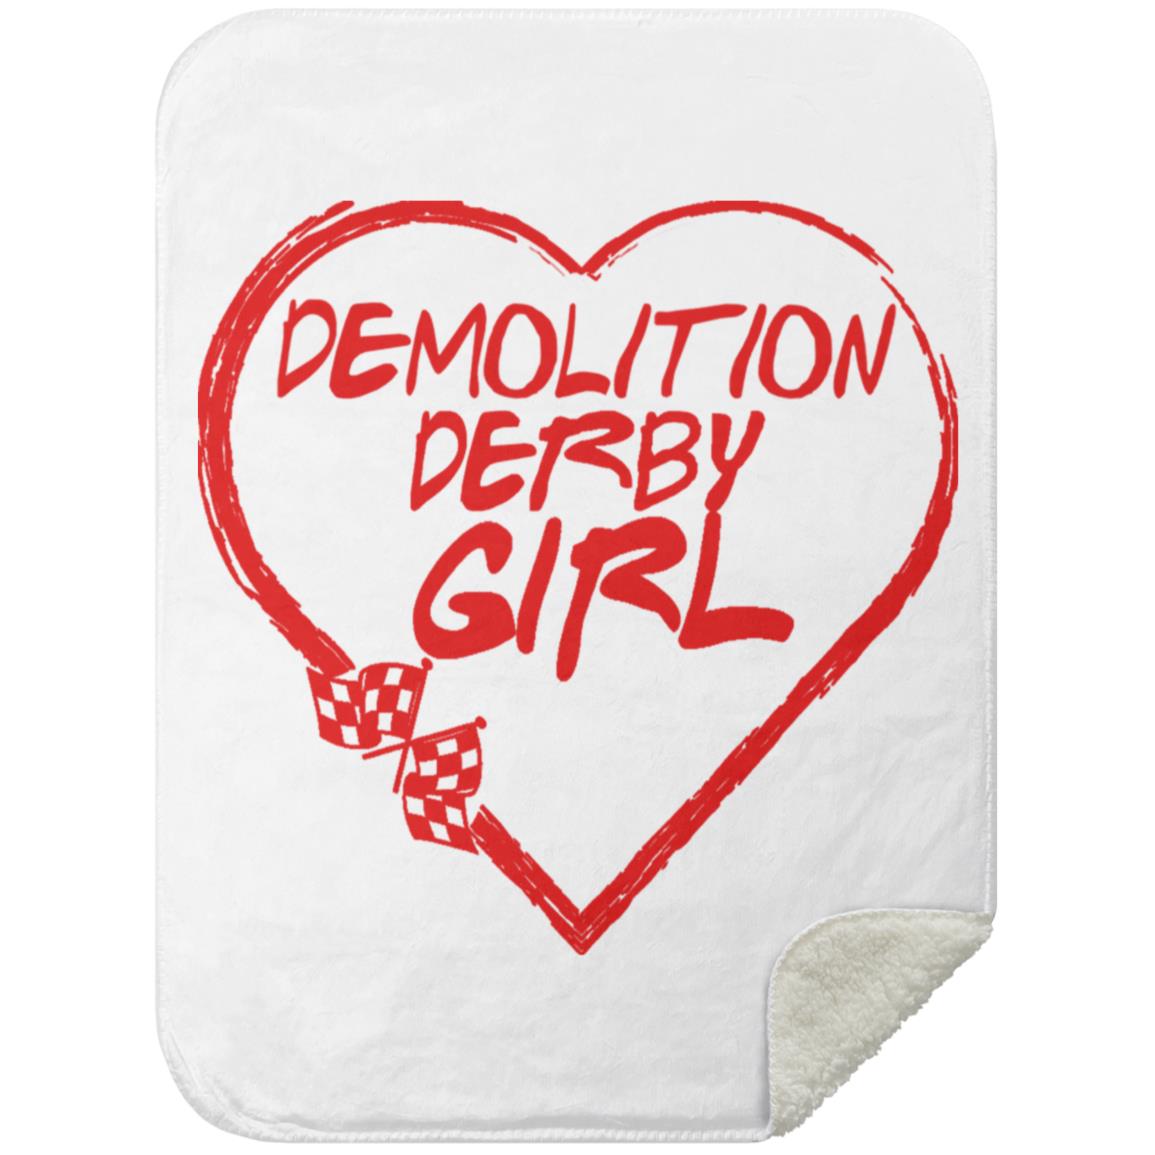 Demolition Derby Girl Heart Mink Sherpa Blanket 30x40